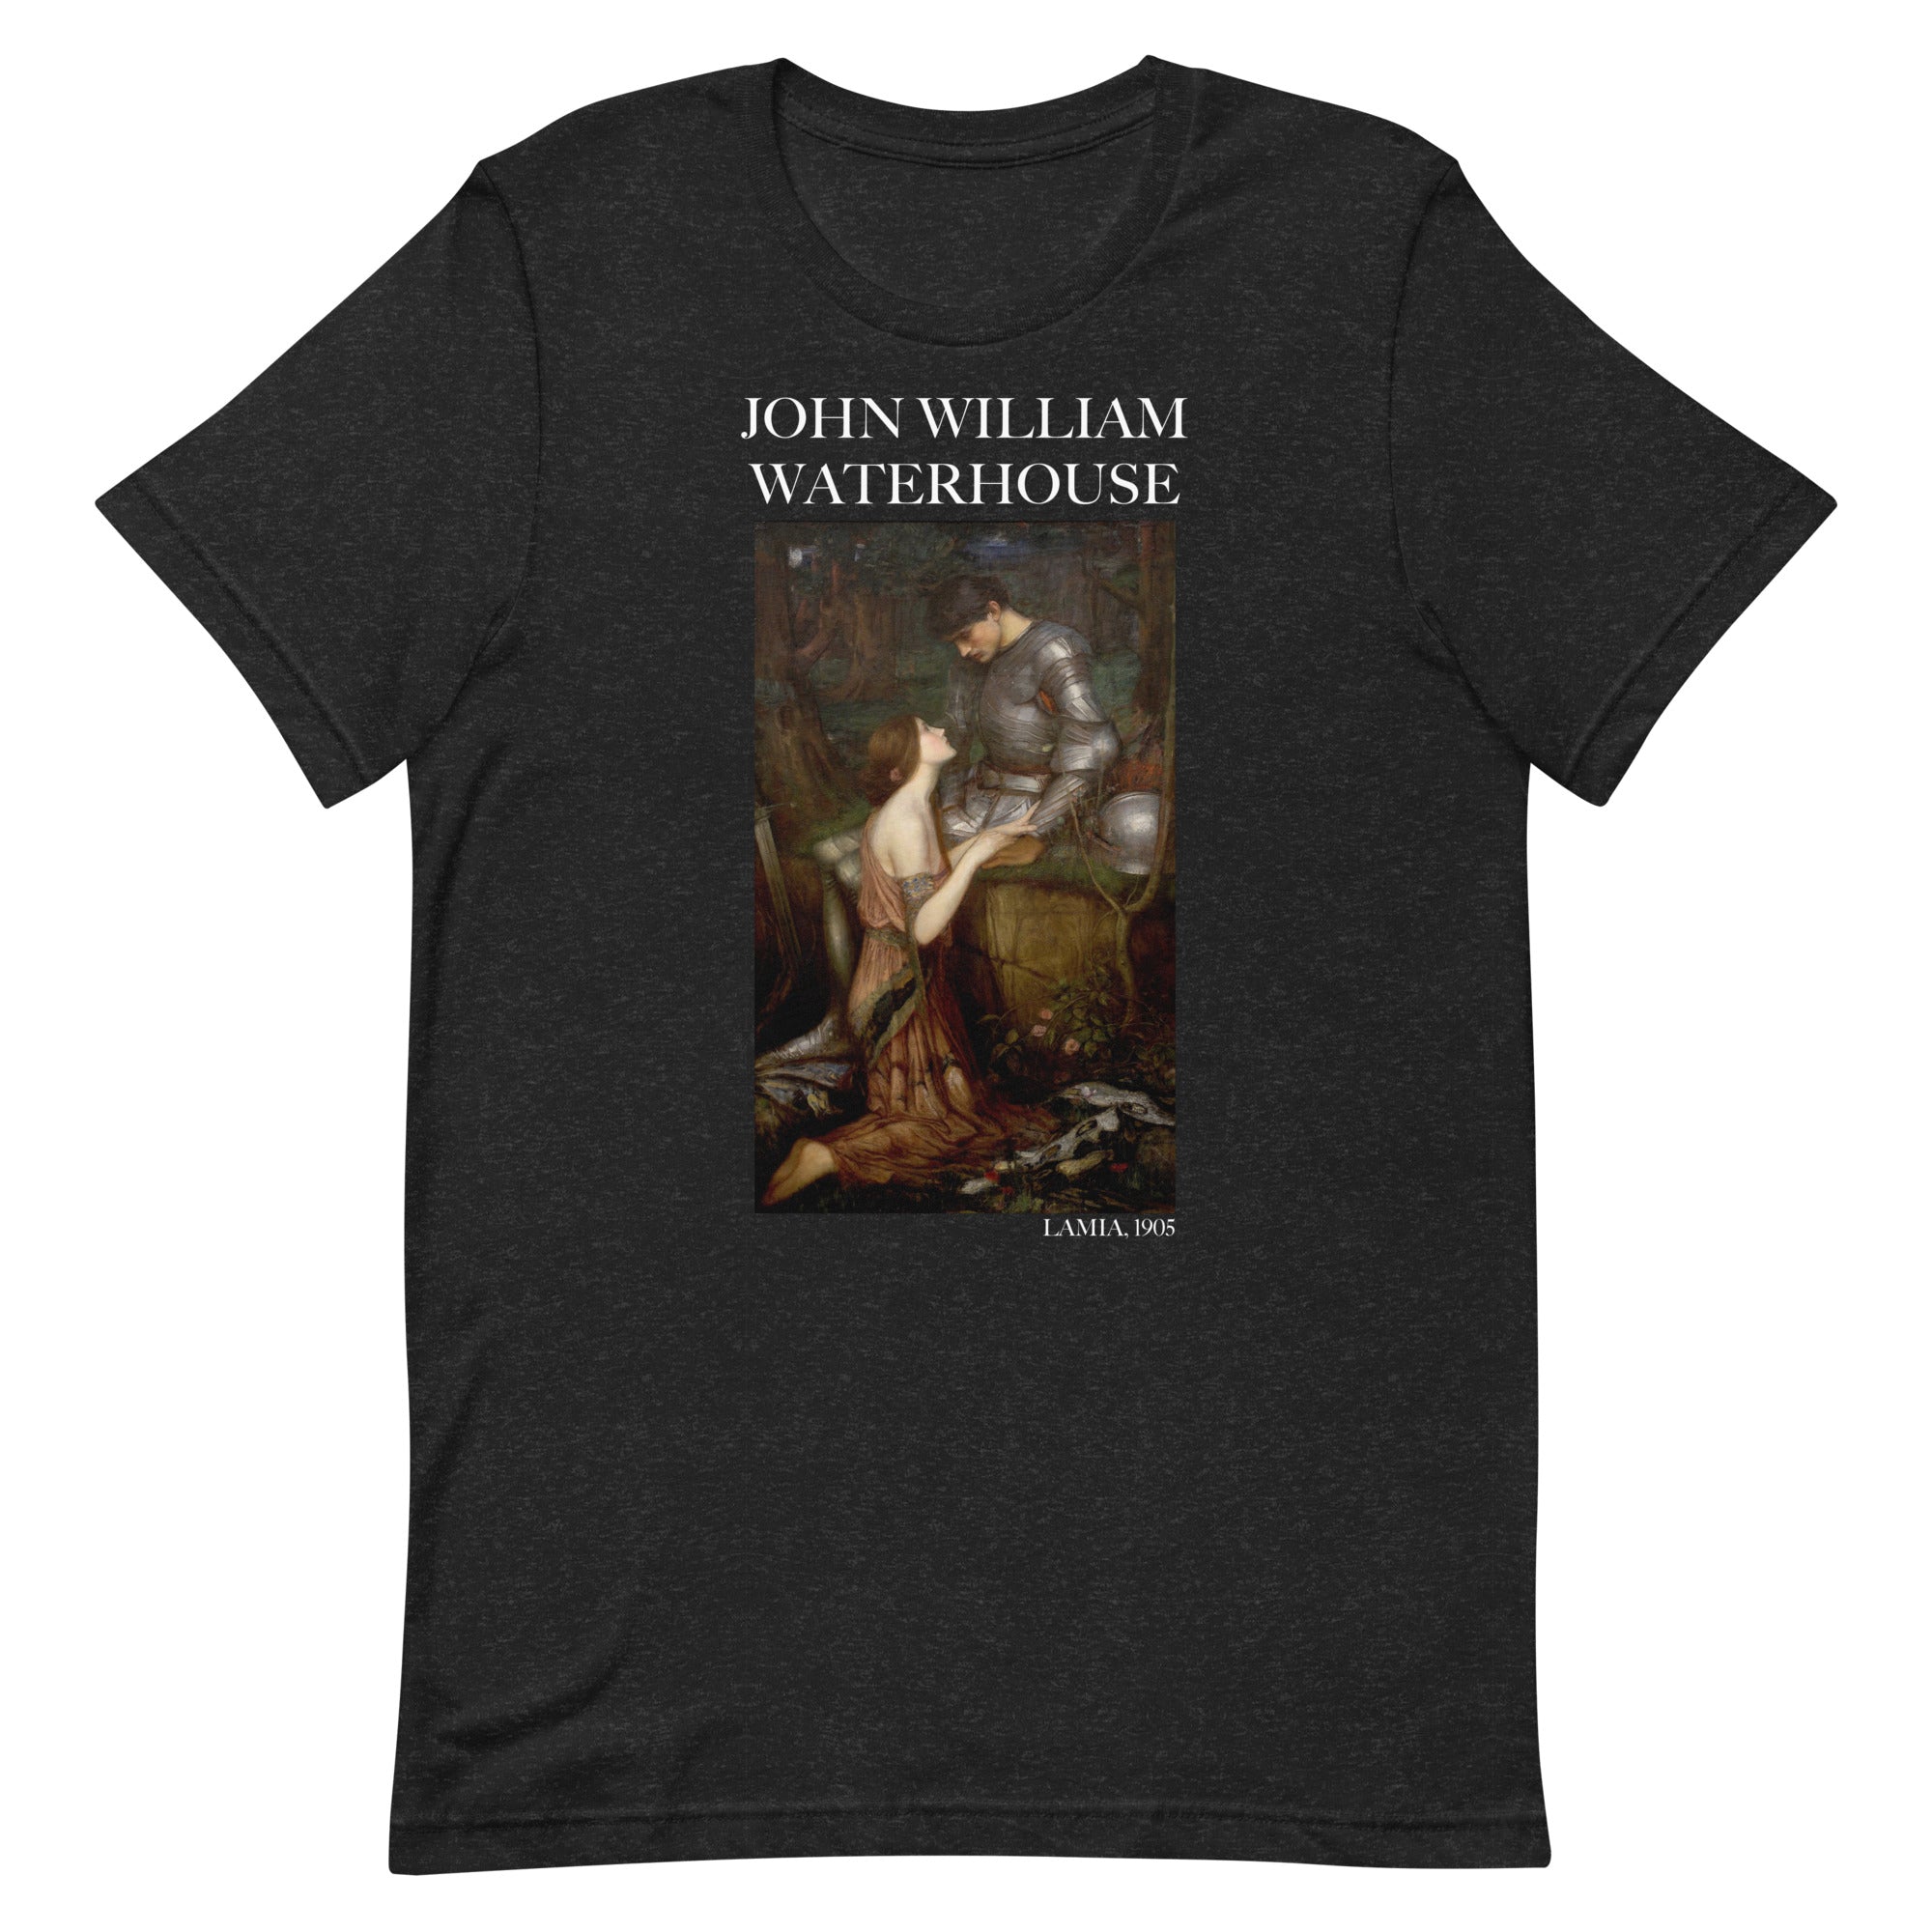 T-Shirt mit berühmtem Gemälde „Lamia“ von John William Waterhouse | Unisex-T-Shirt im klassischen Kunststil